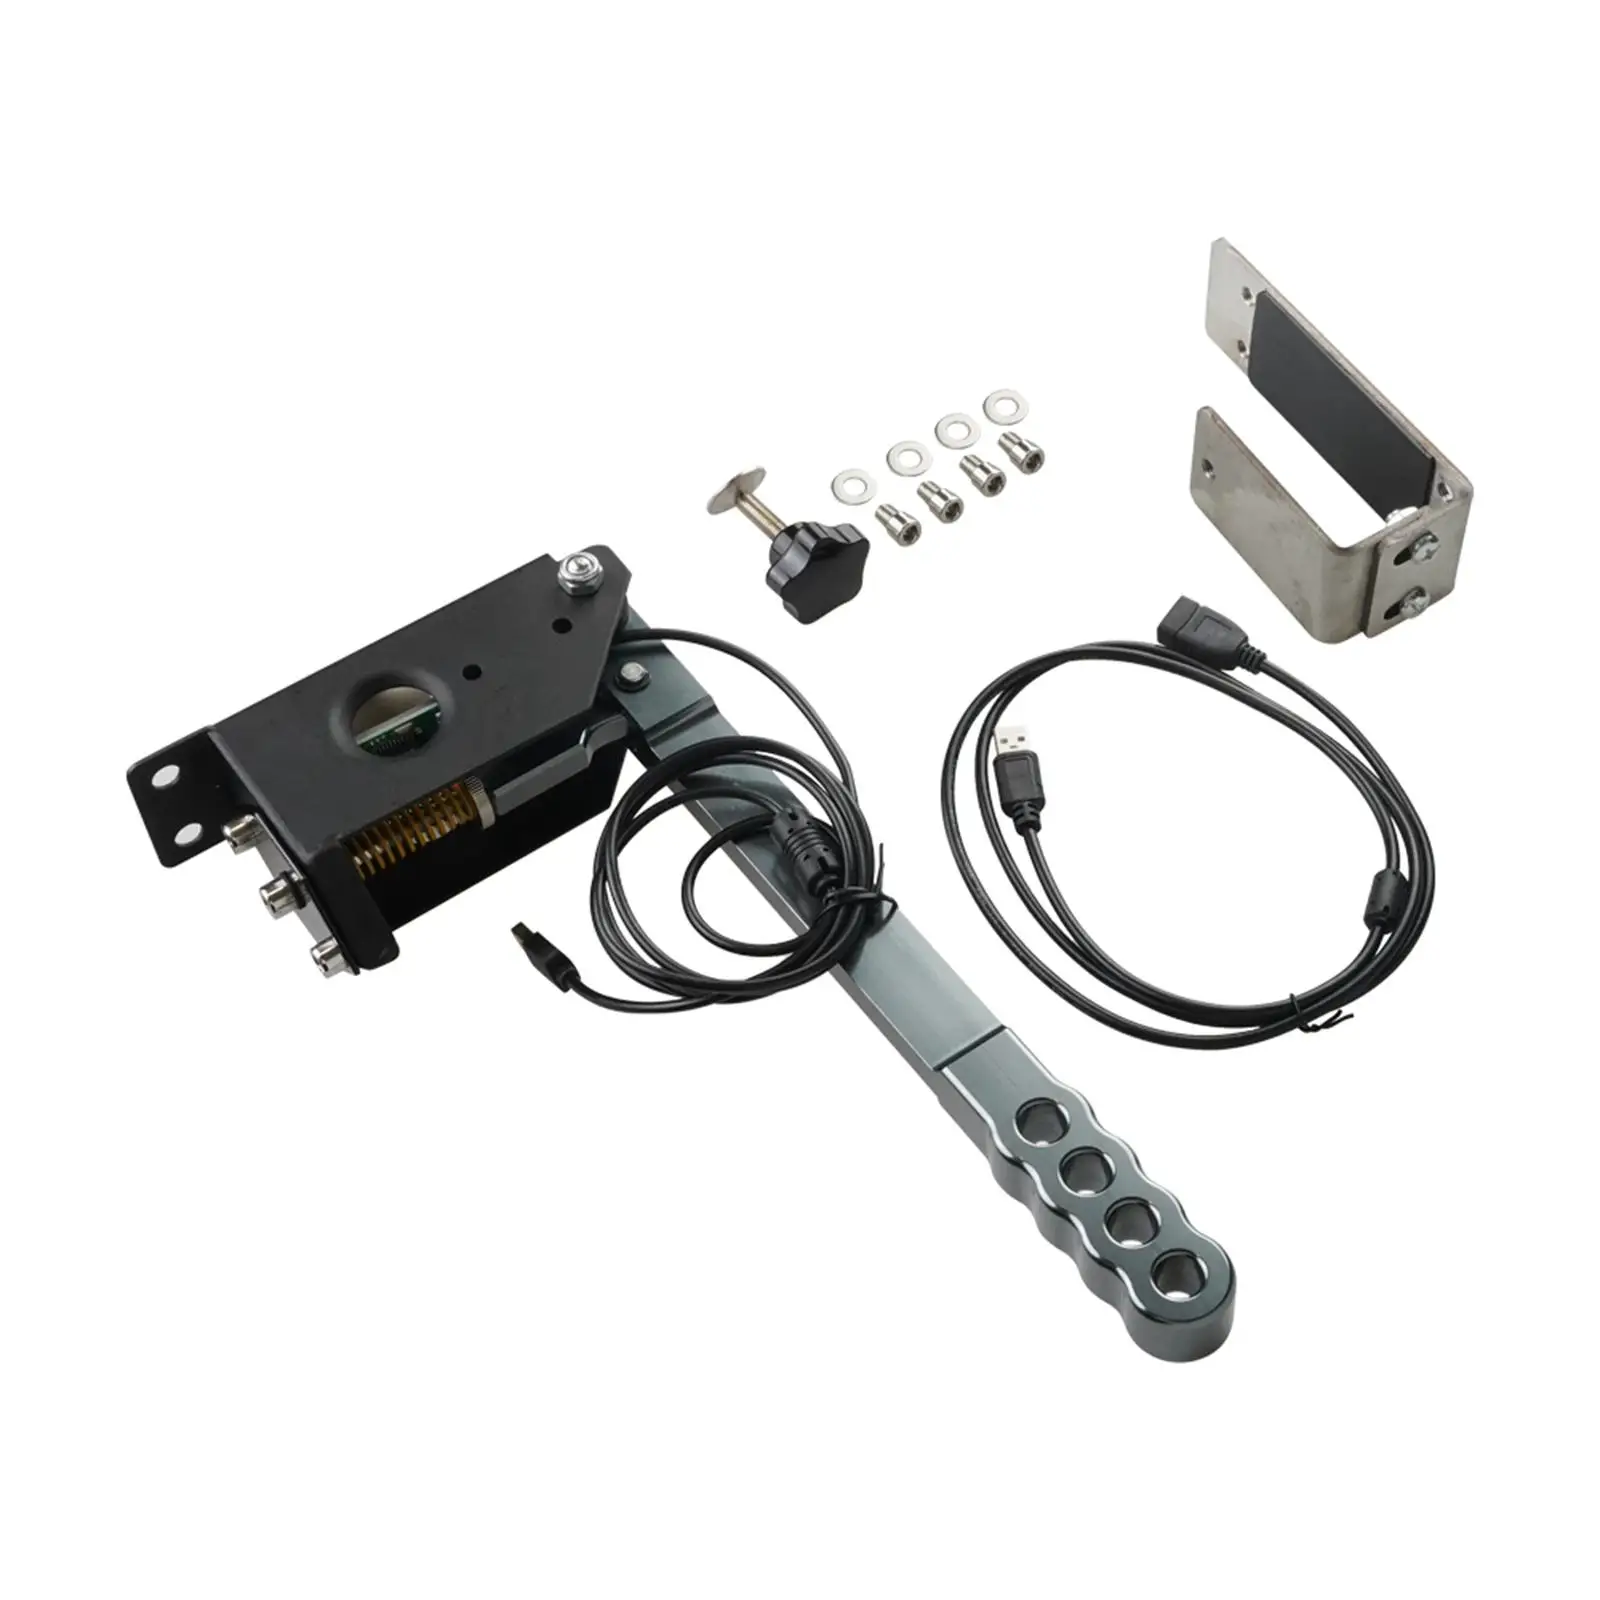 Brake System Handbrake USB Handbrake Clamp for Logitech G29 G27 G25 PC